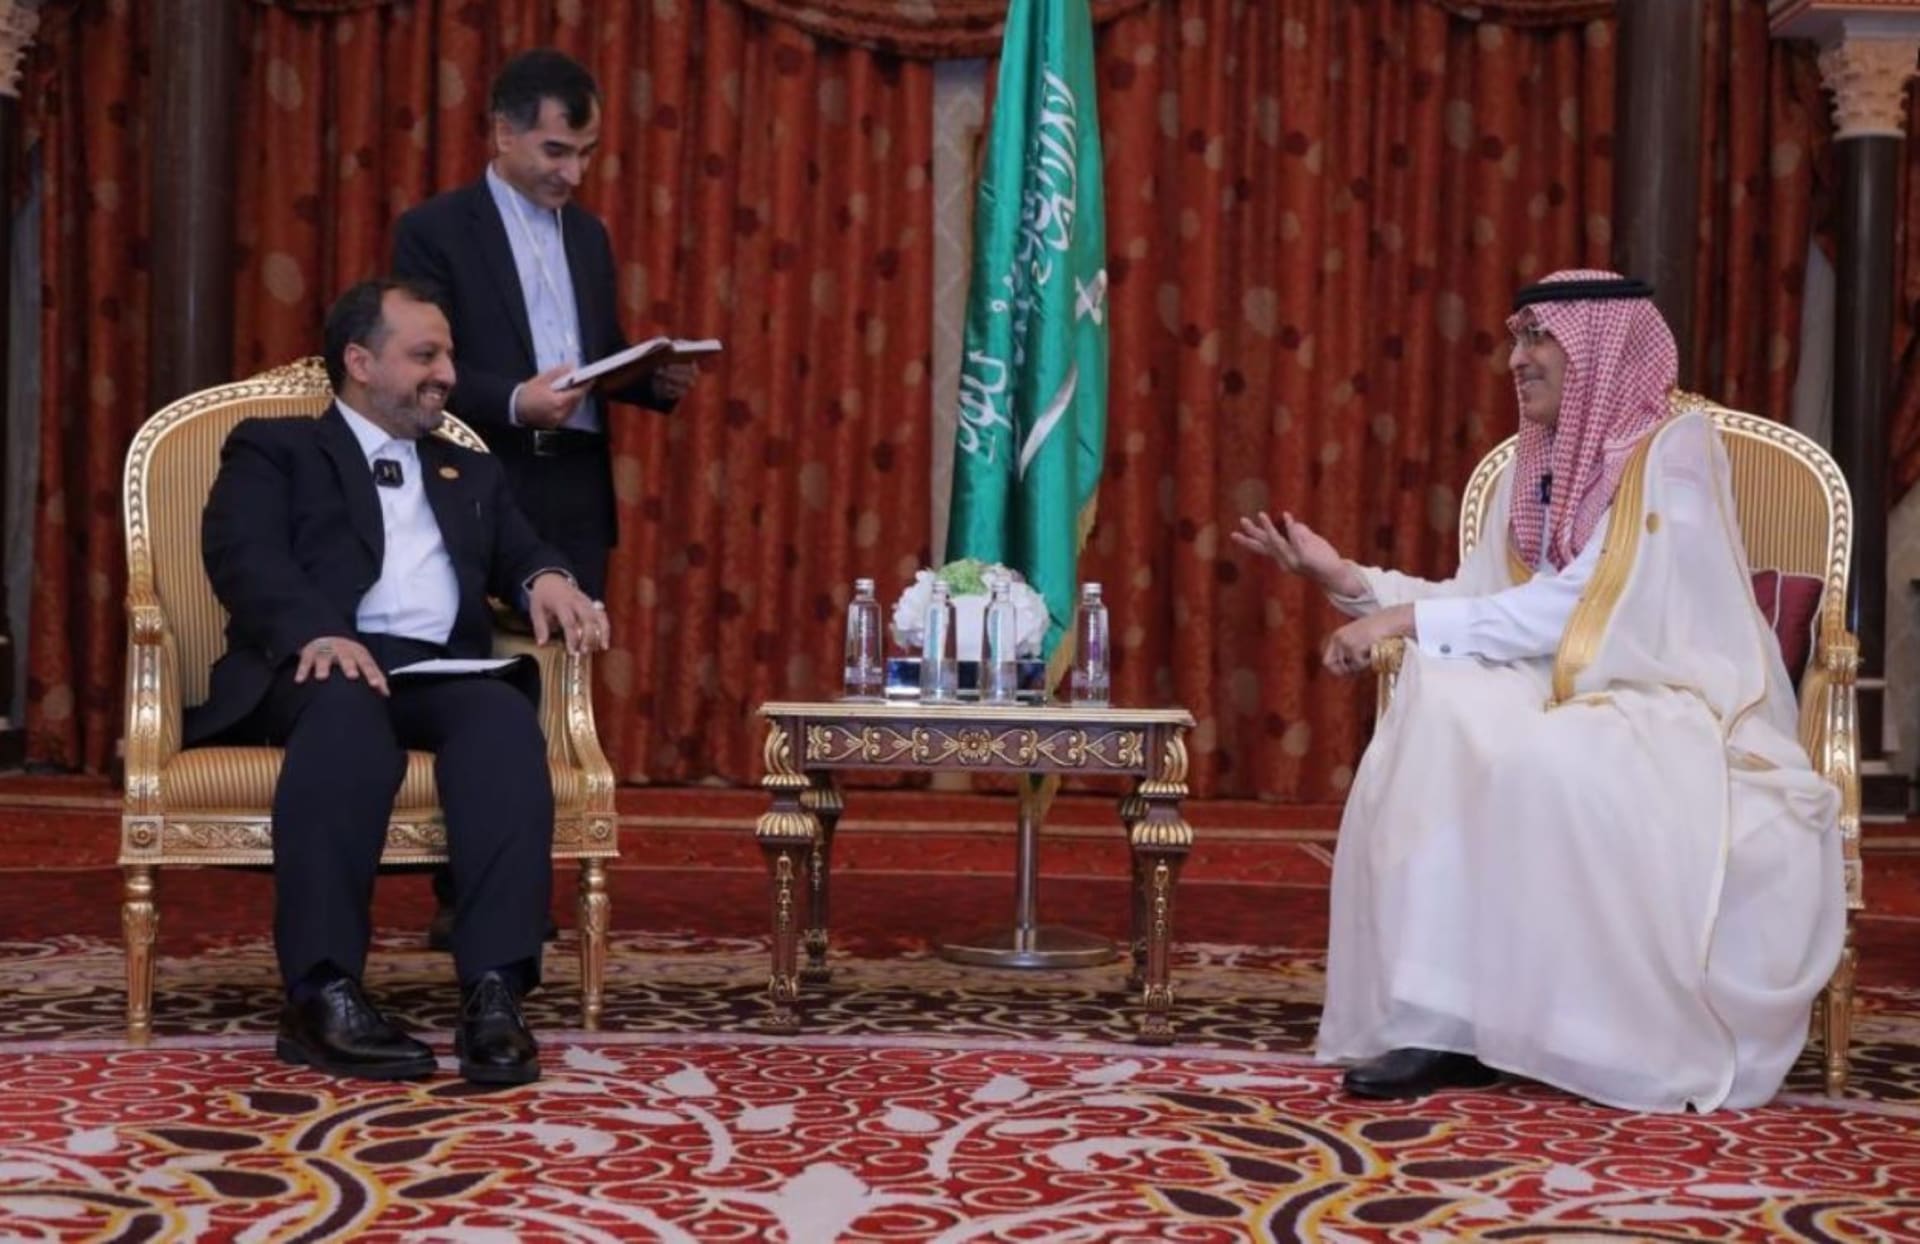 وزير المالية السعودي يوضح ما دار خلال لقائه مع وزير الاقتصاد الإيراني